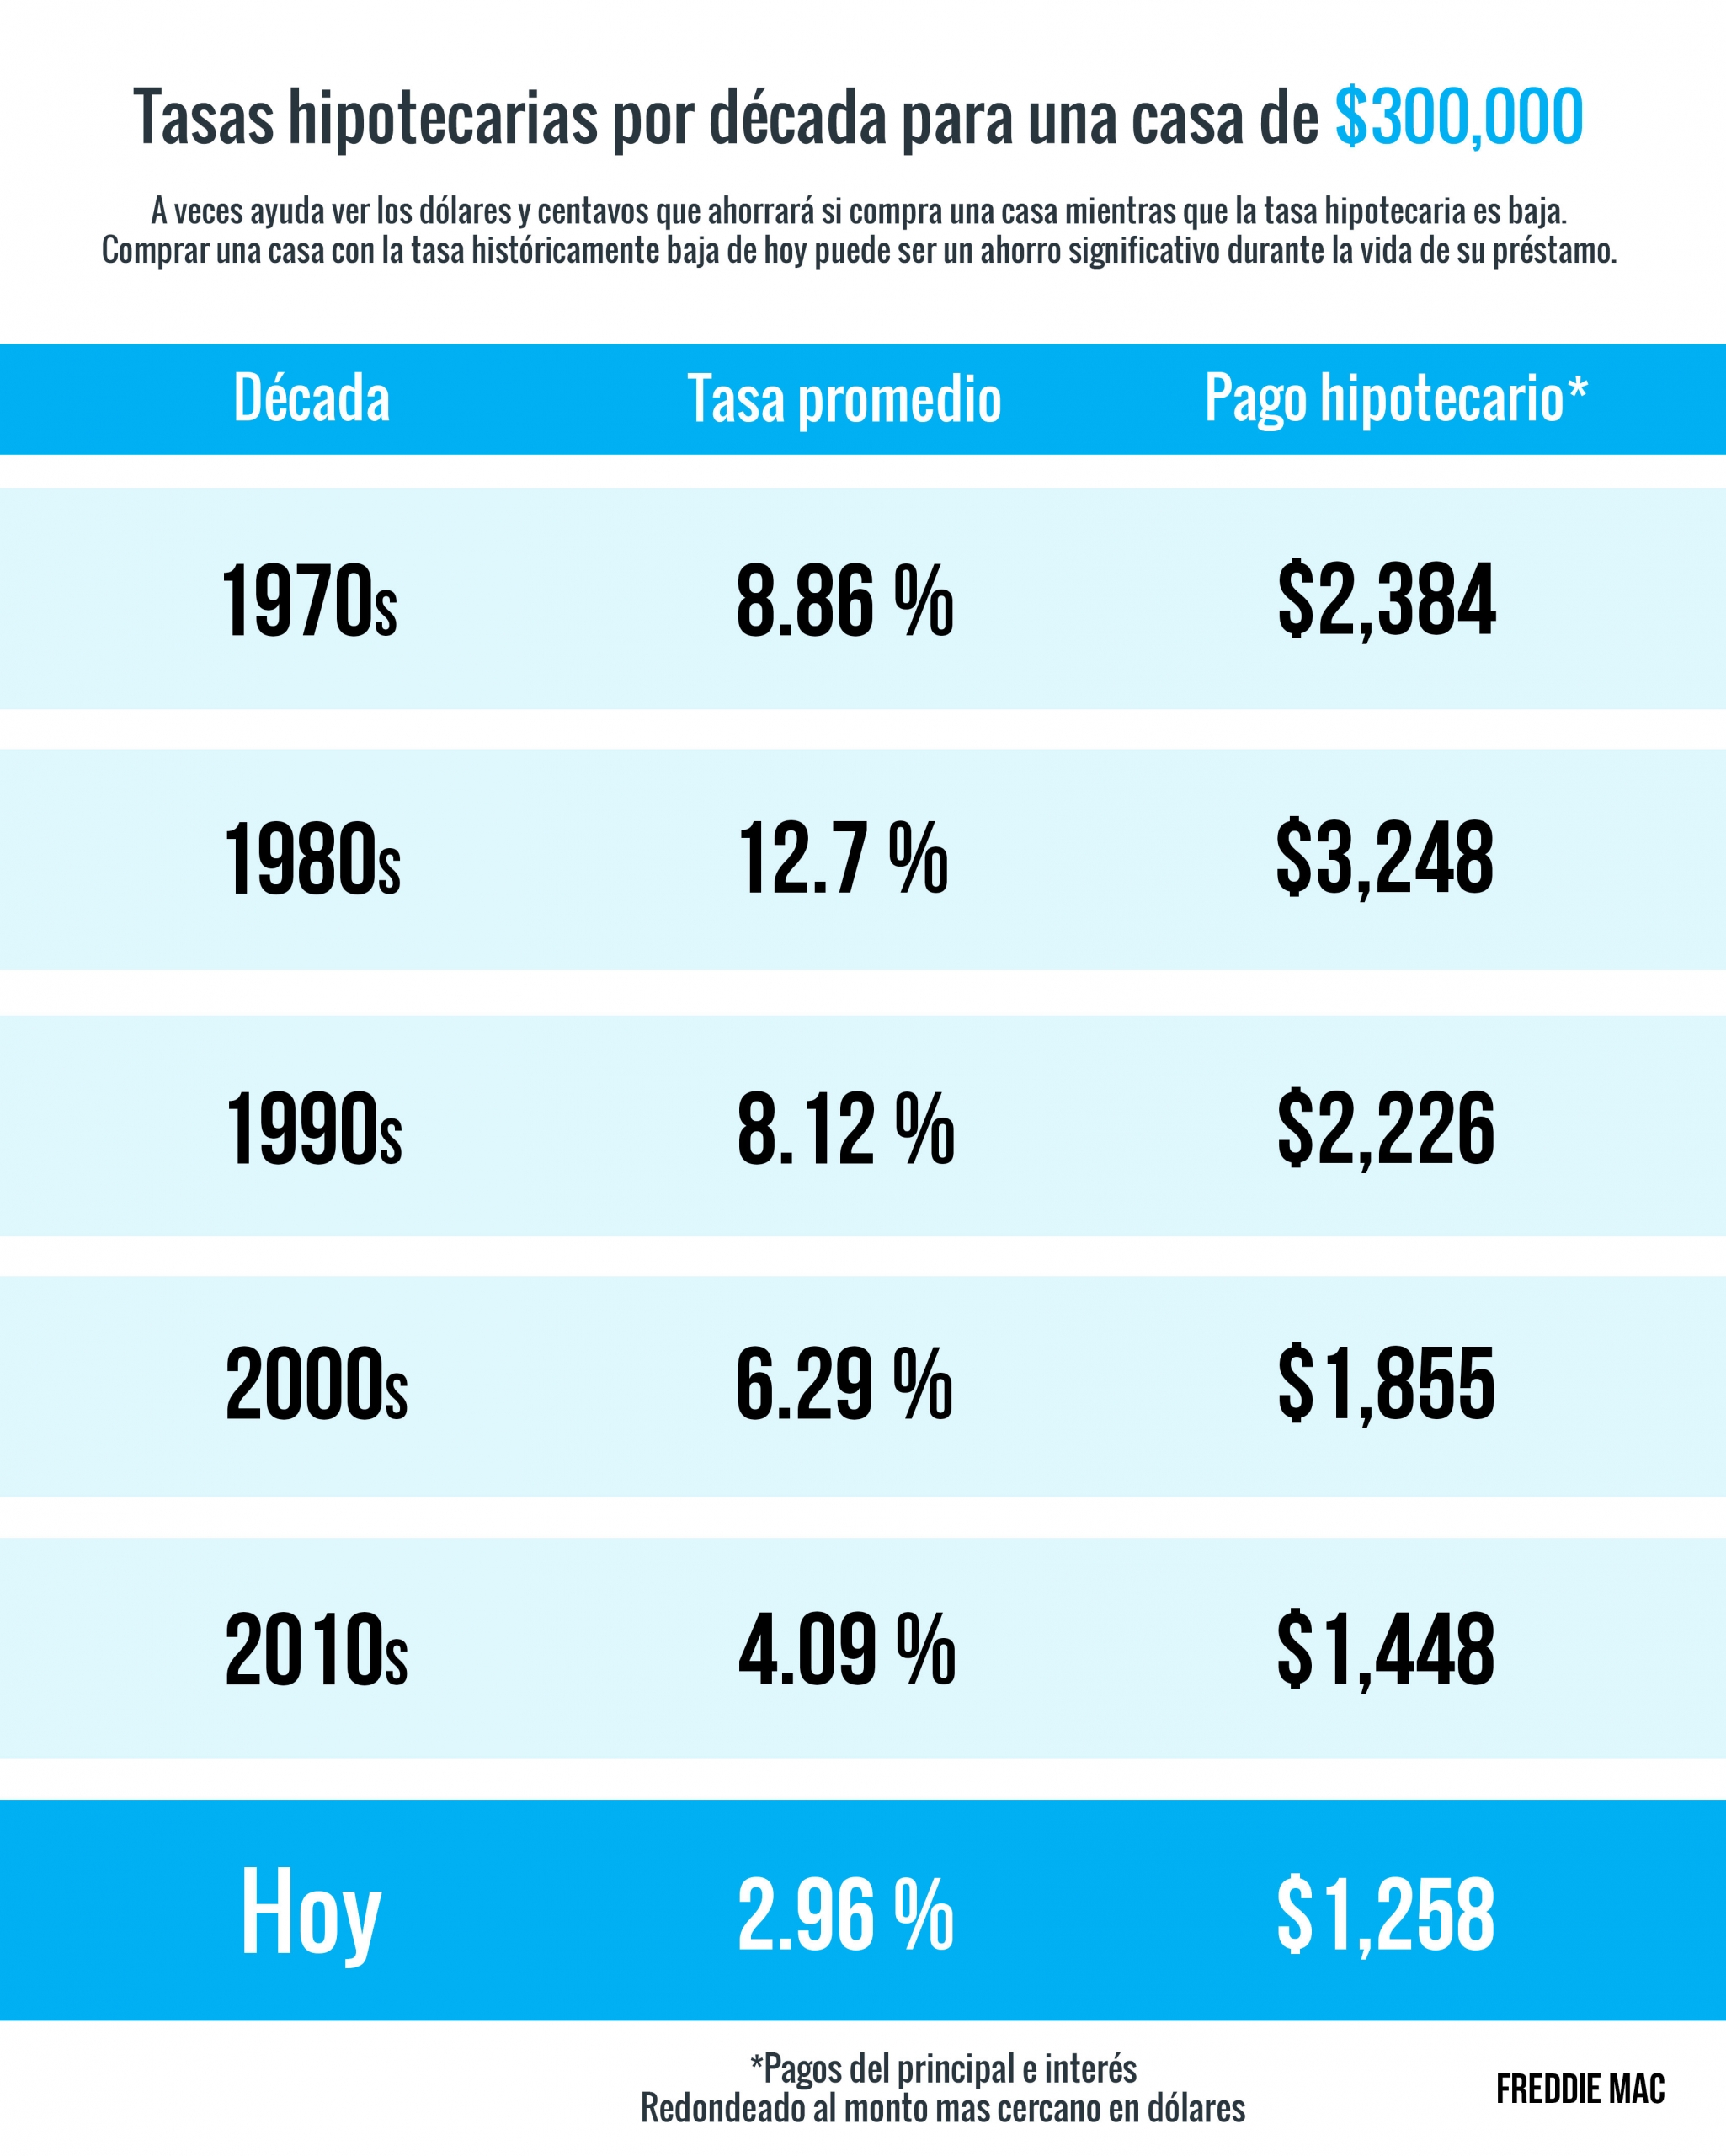 Tasas y pagos hipotecarios por década [Infografía] | Simplifying The Market